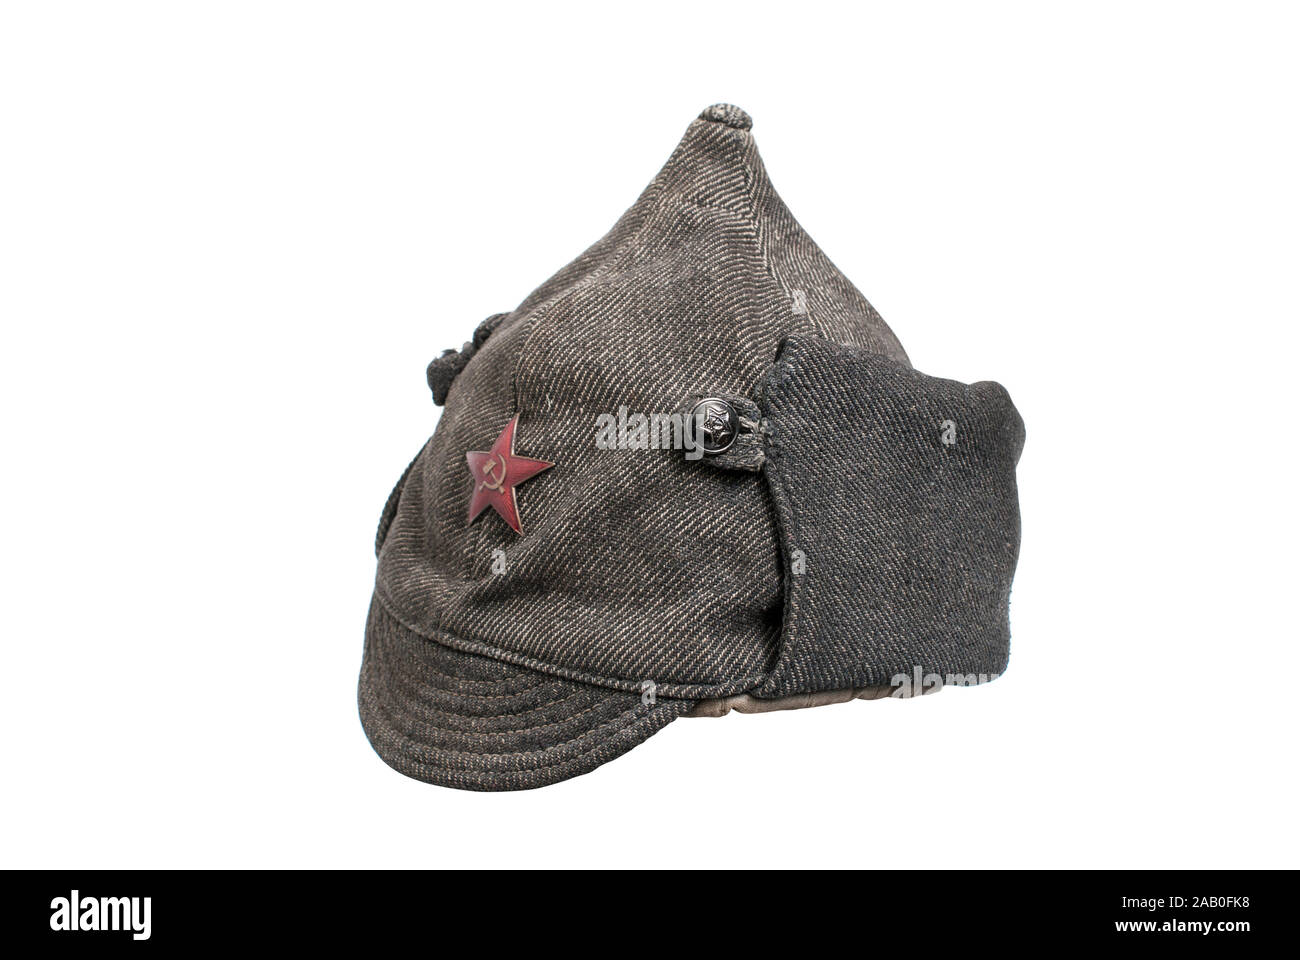 Udssr (Rußland) Geschichte. Udssr militärische Kappe (Budenny Kappe) - spitzen Helm, die ehemals von der Roten Armee Männern getragen. 1933. Russland. Stockfoto